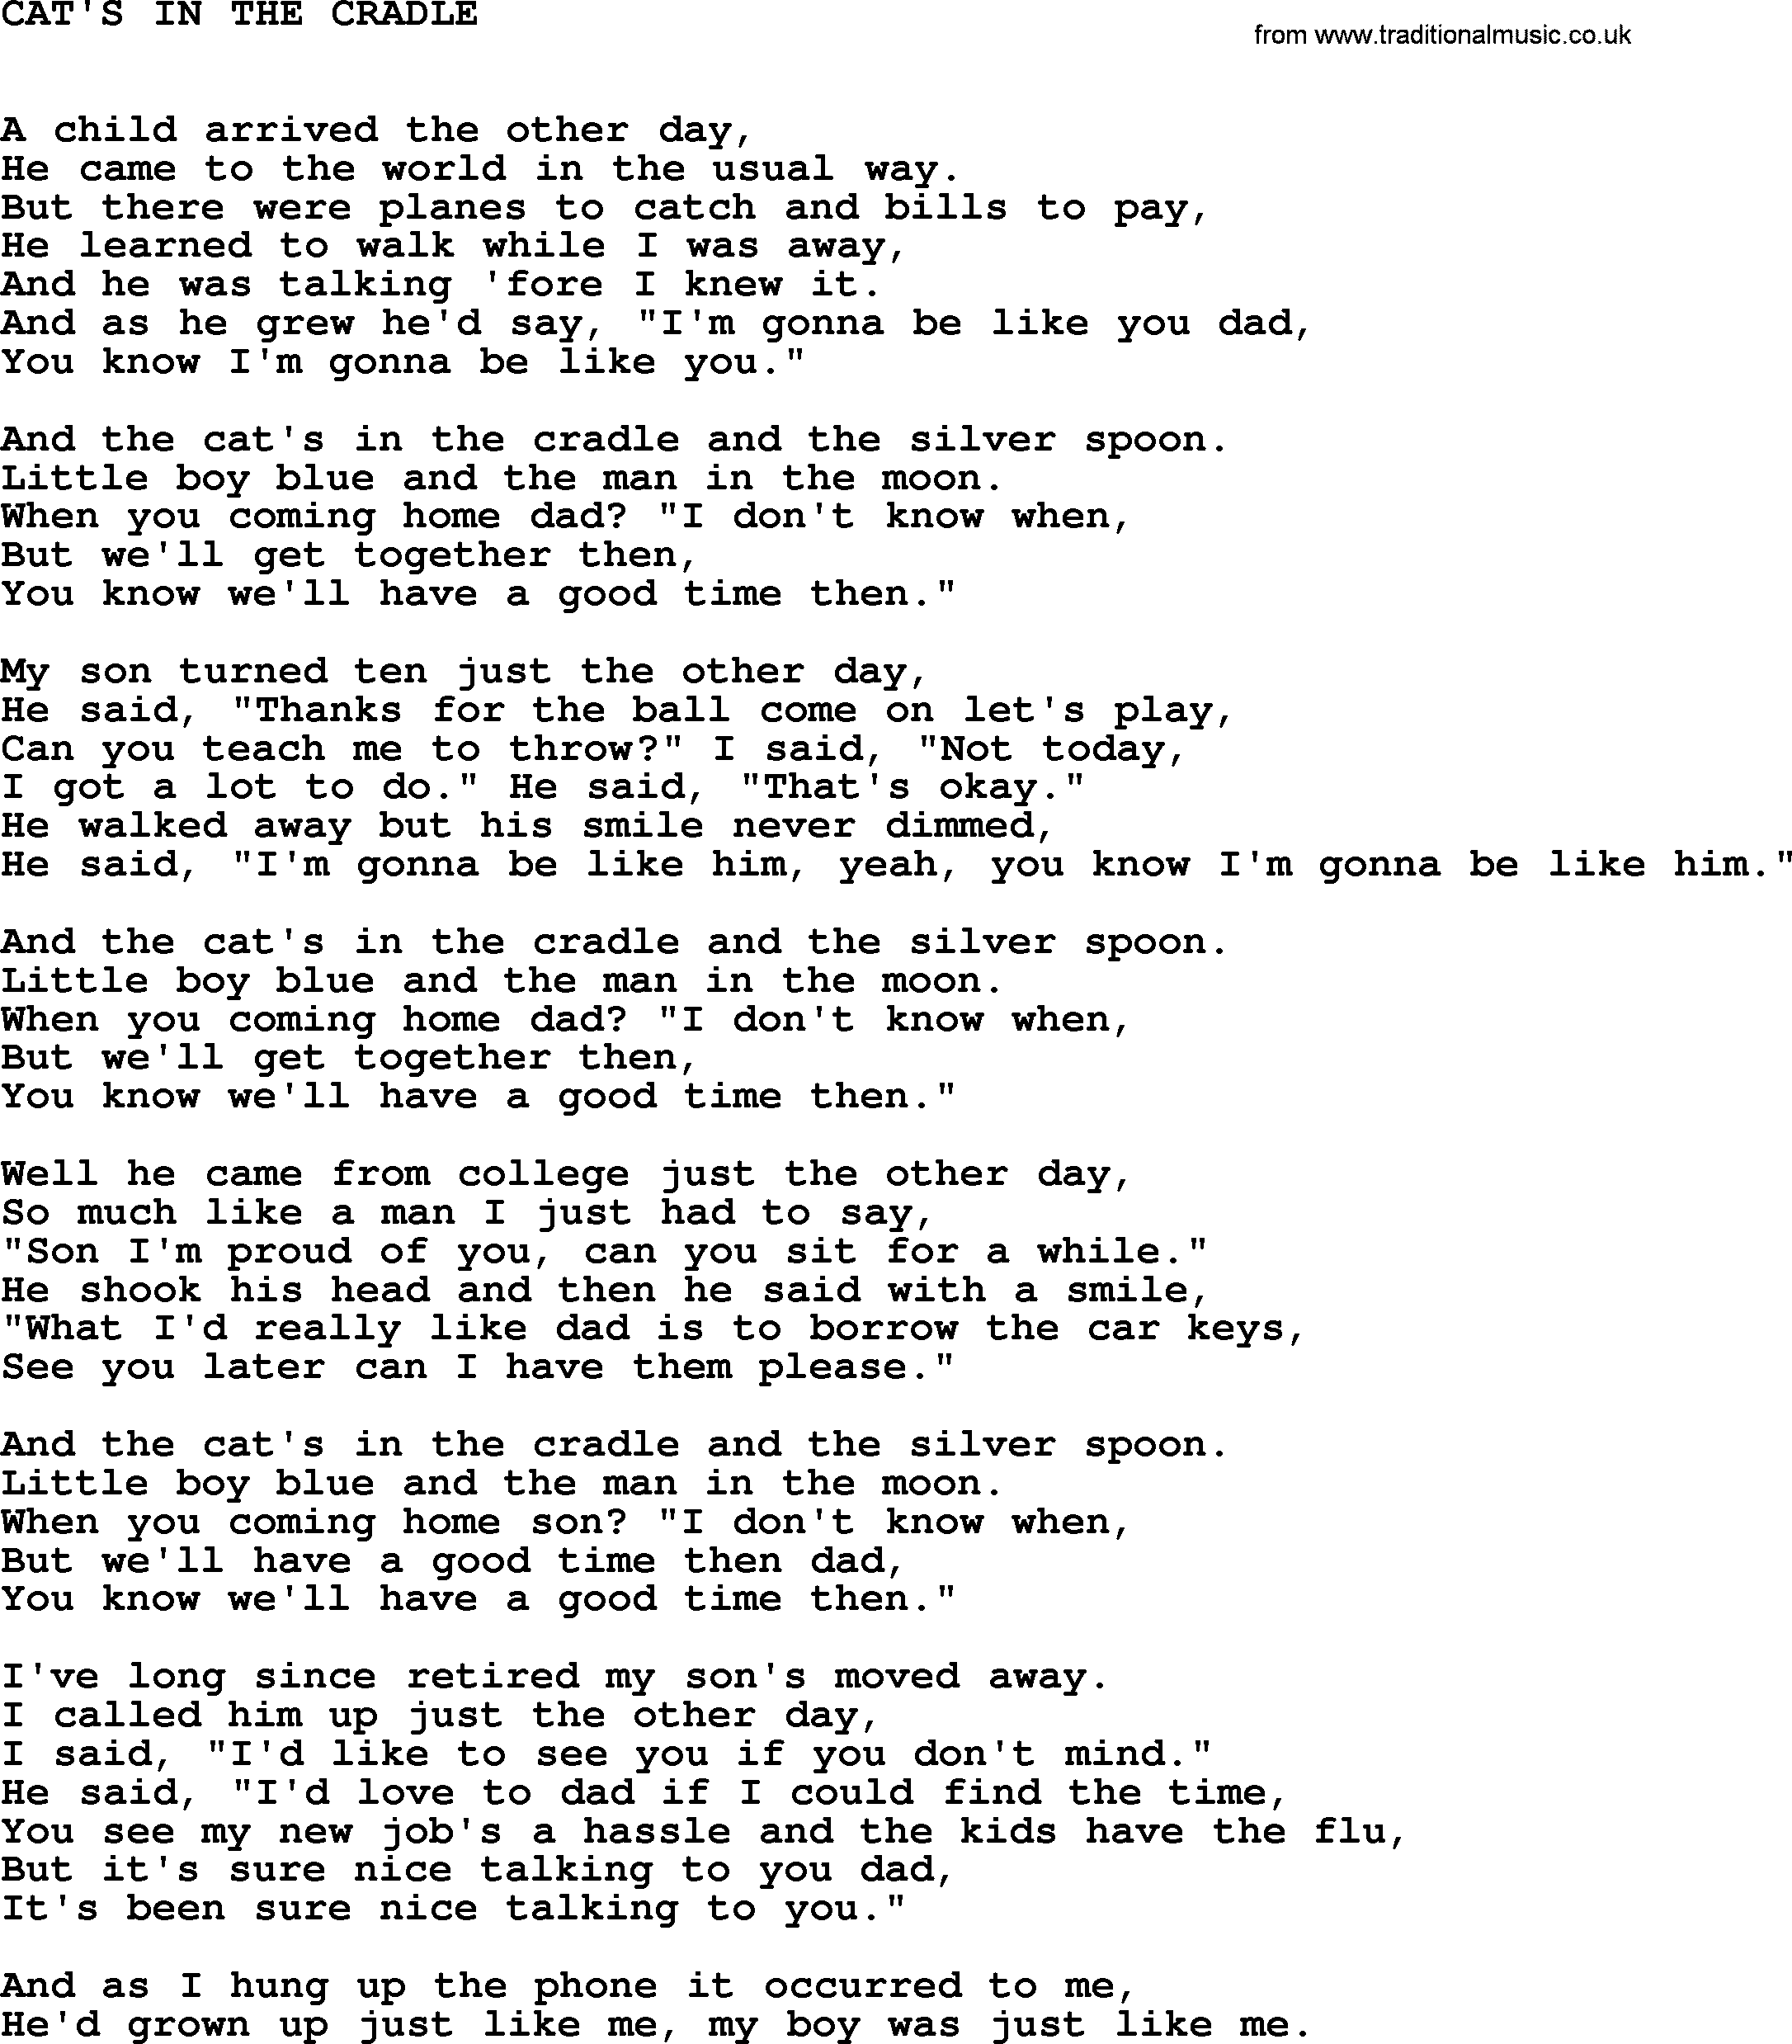 Johnny Cash song Cat's In The Cradle.txt lyrics